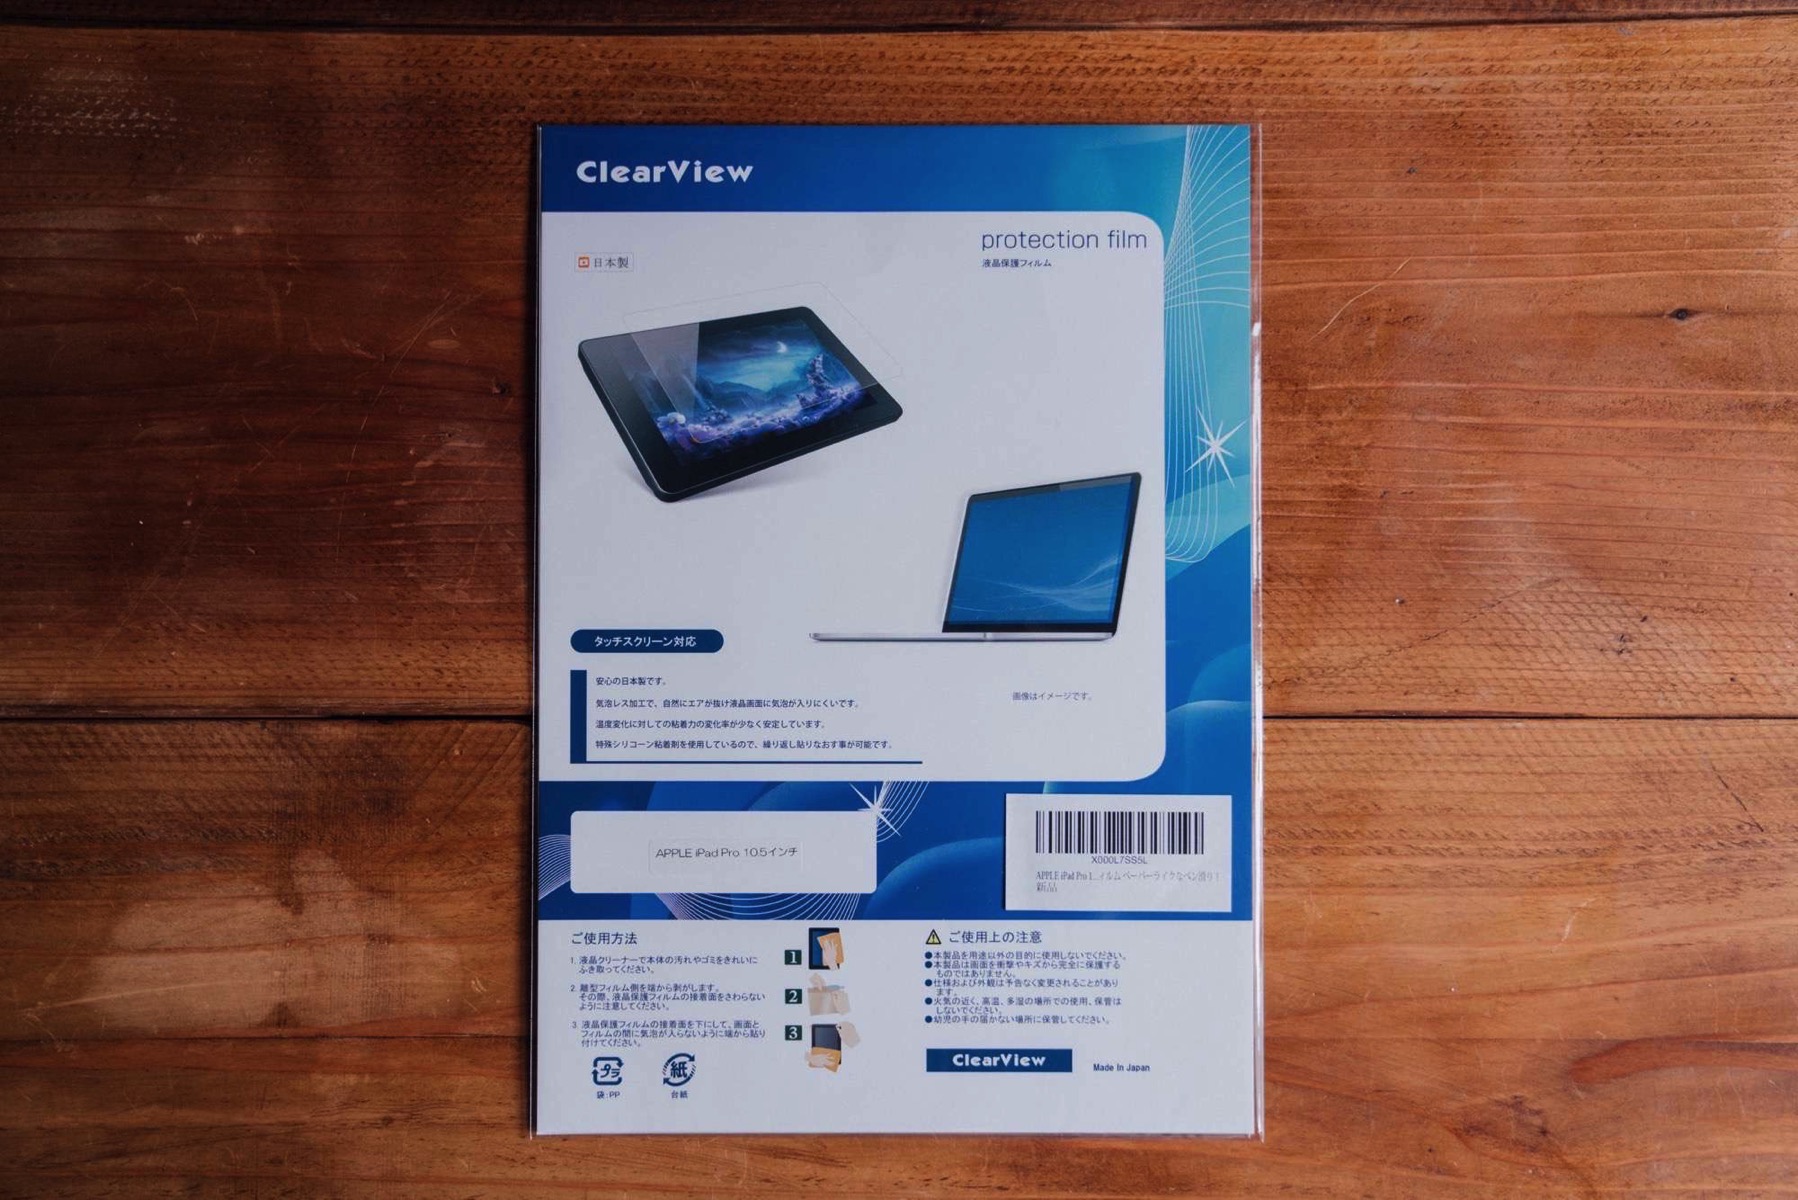 APPLE iPad Pro 10 5 paper like film 3